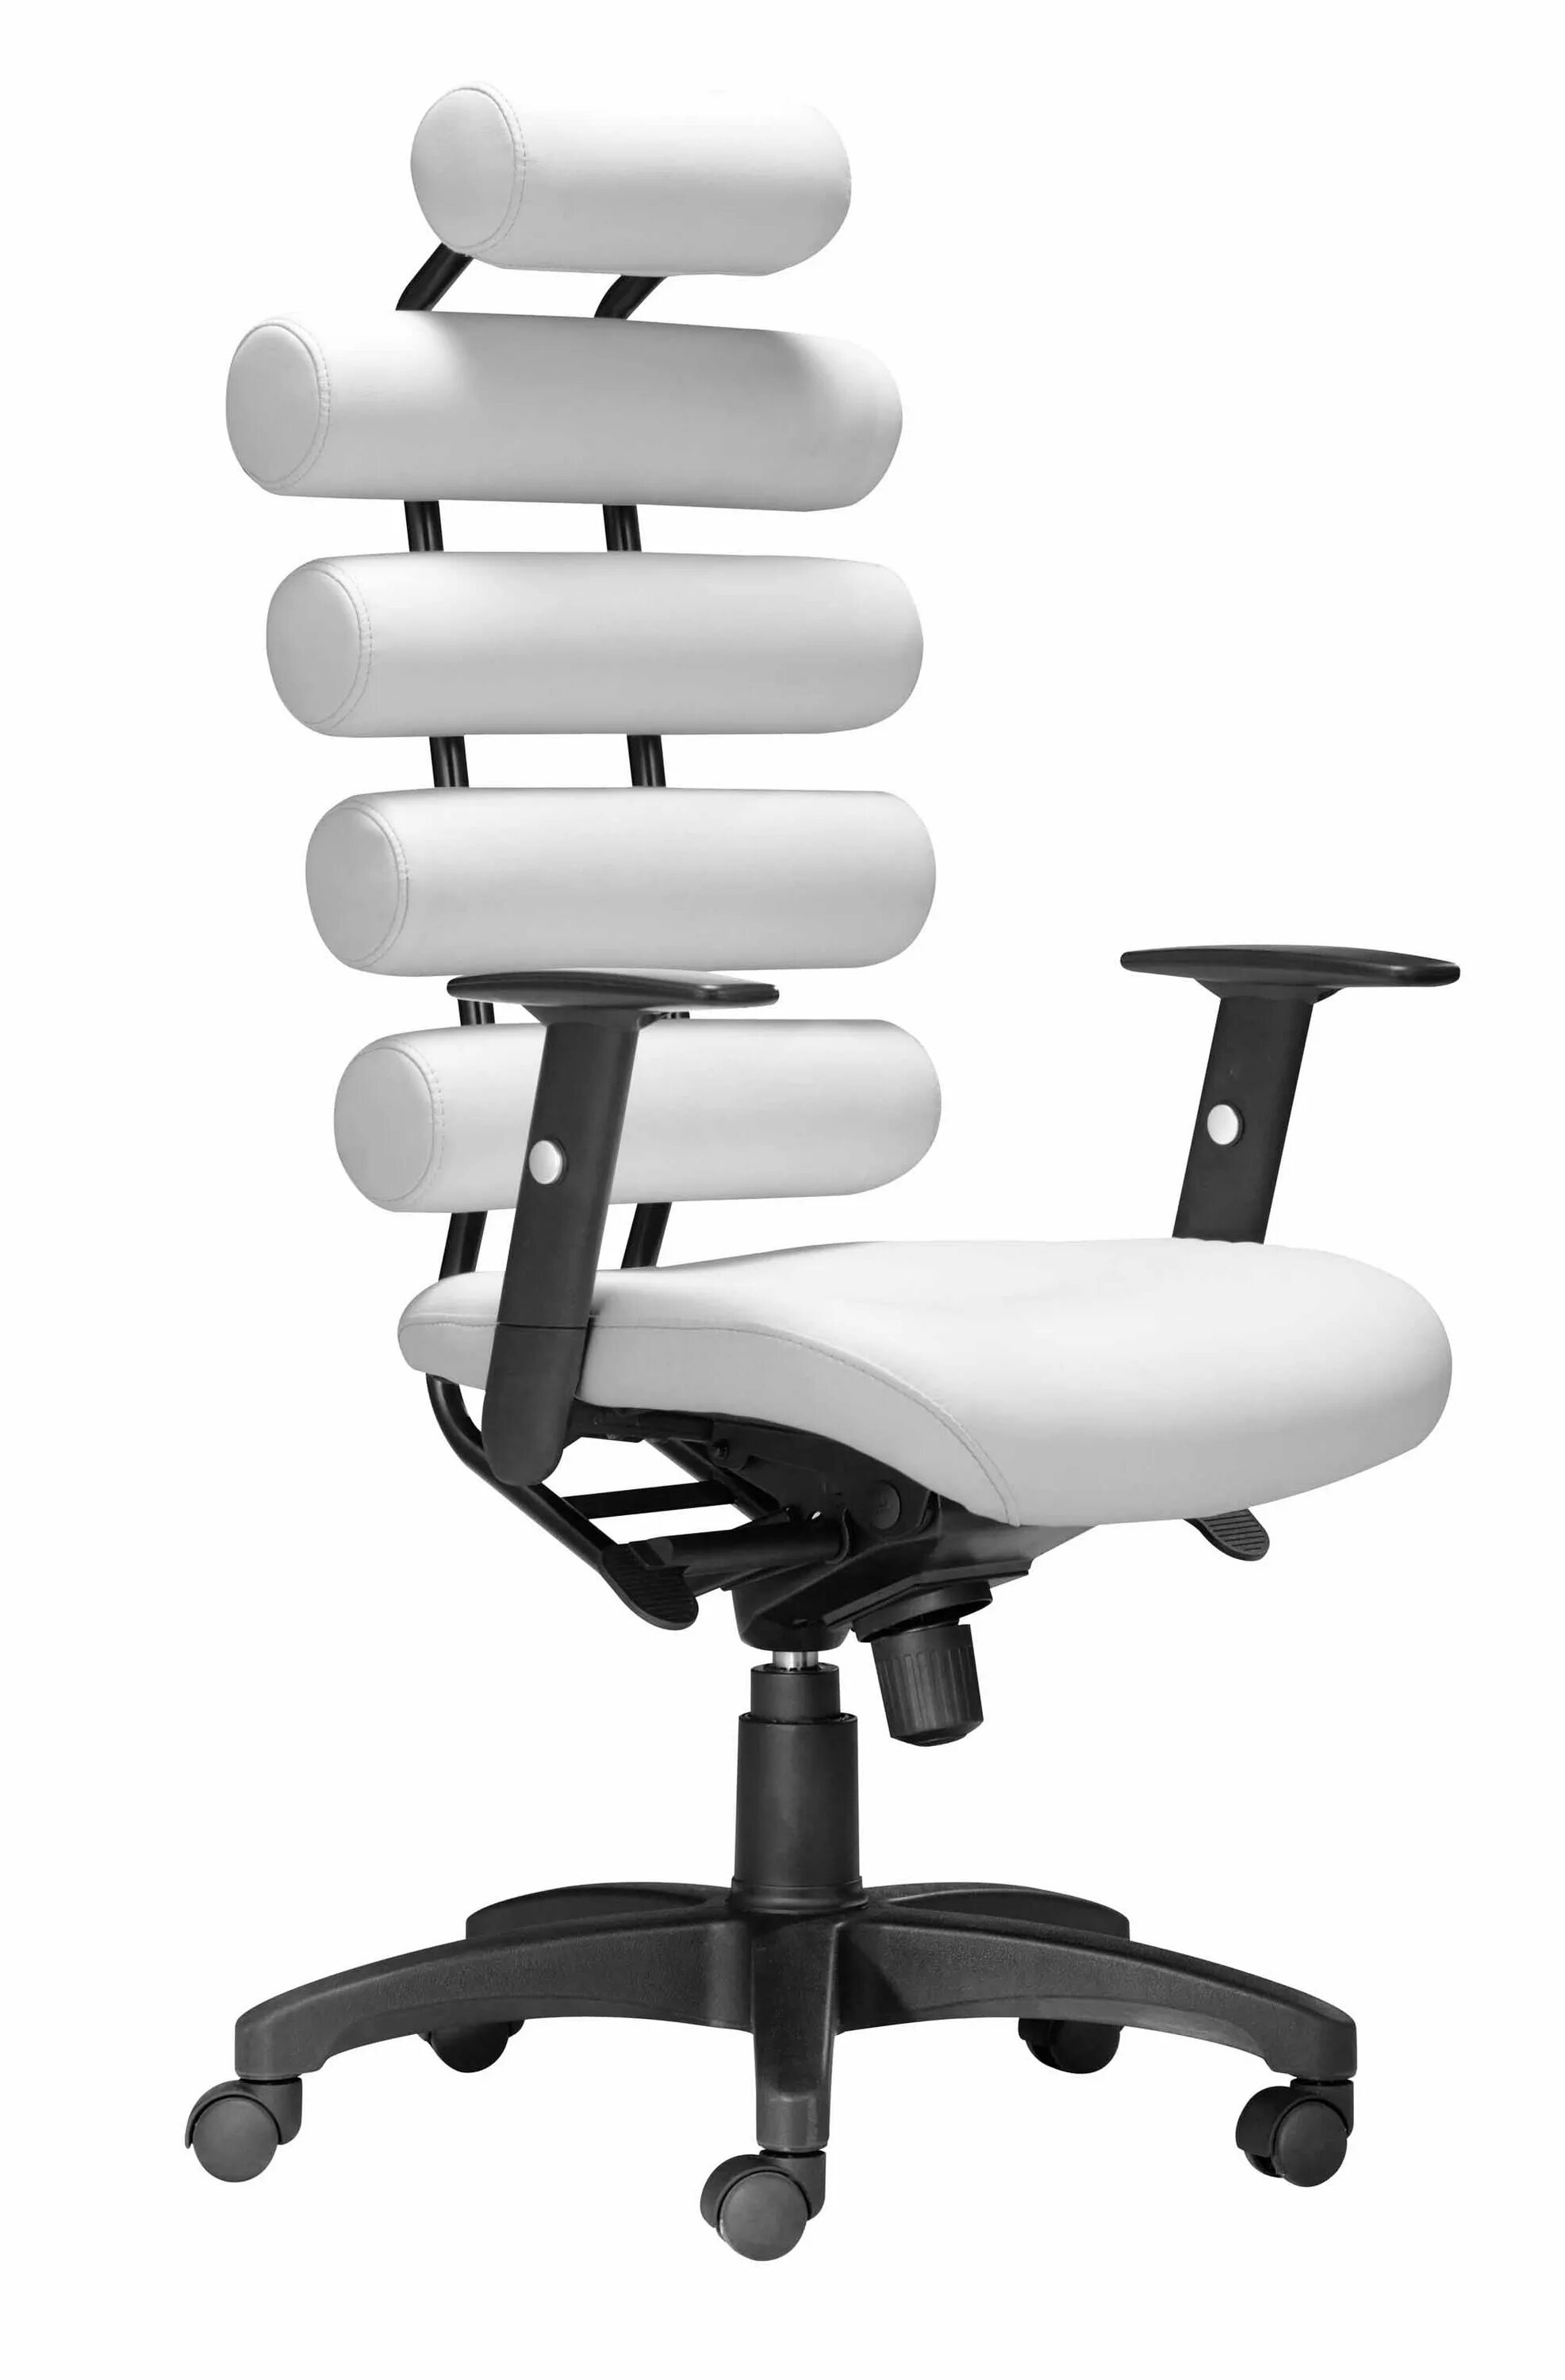 Купить стул для работы. Leixin офисное кресло. Ортопедическое кресло enter Office Enigma ч. Офисное кресло Колин White. Офисное компьютерное кресло Viva 937f.